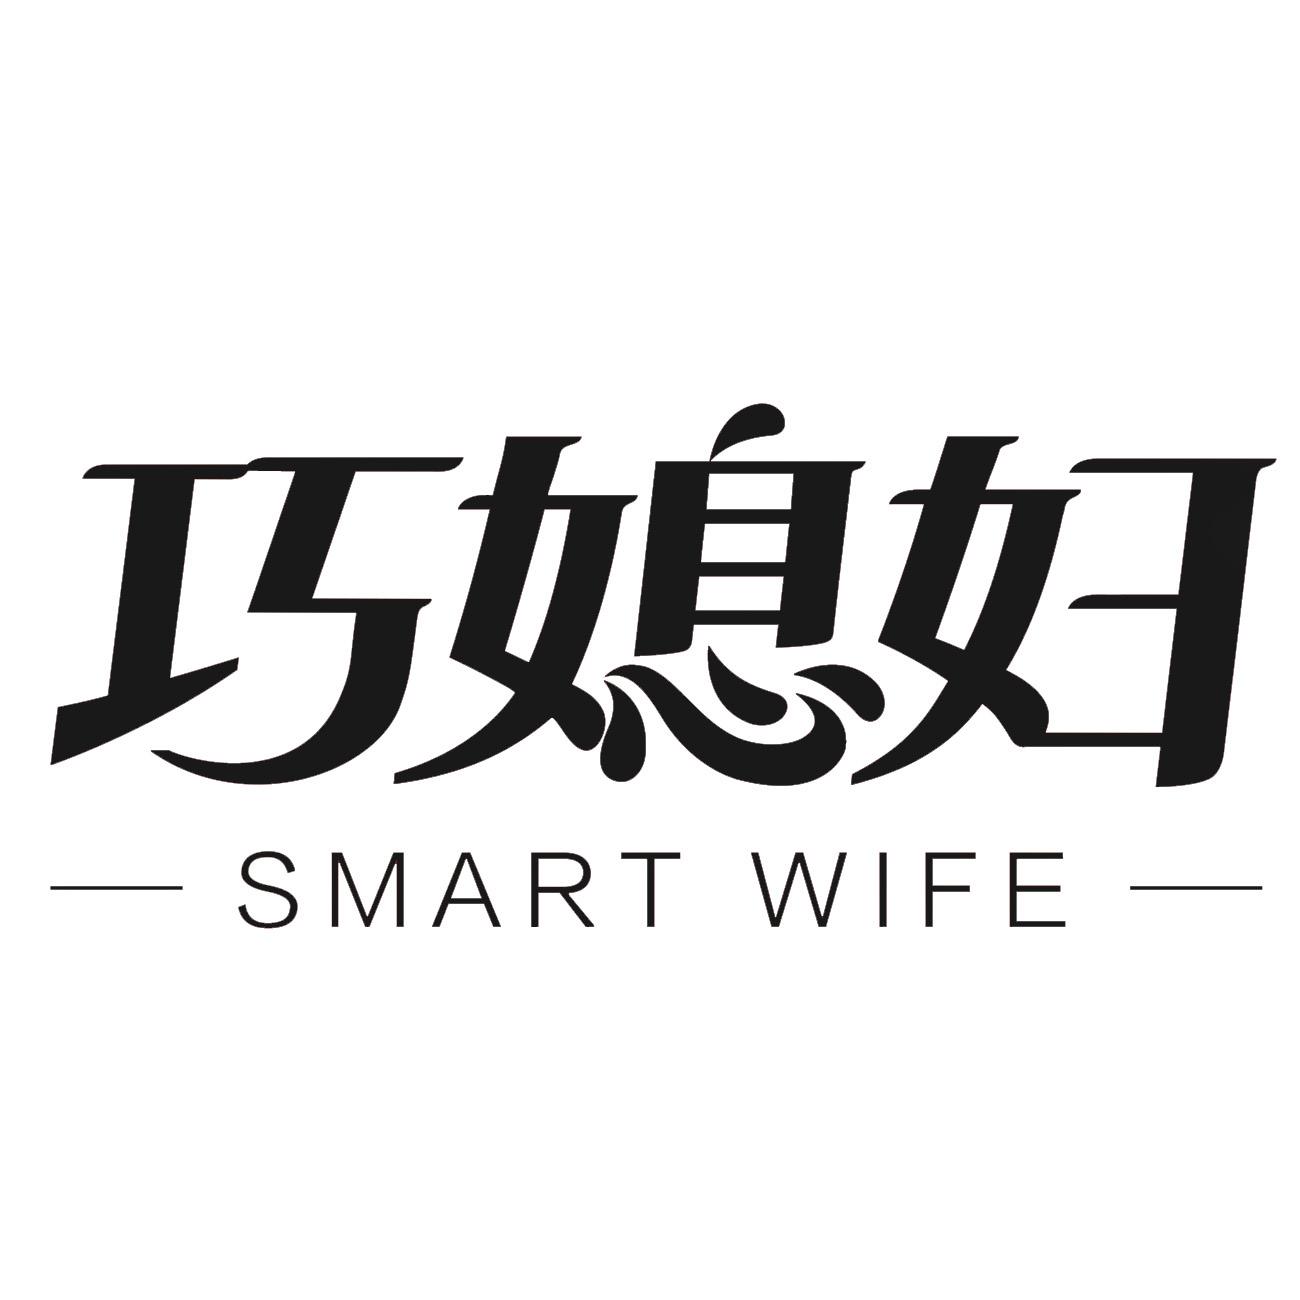 巧媳妇 smart wife 商标公告